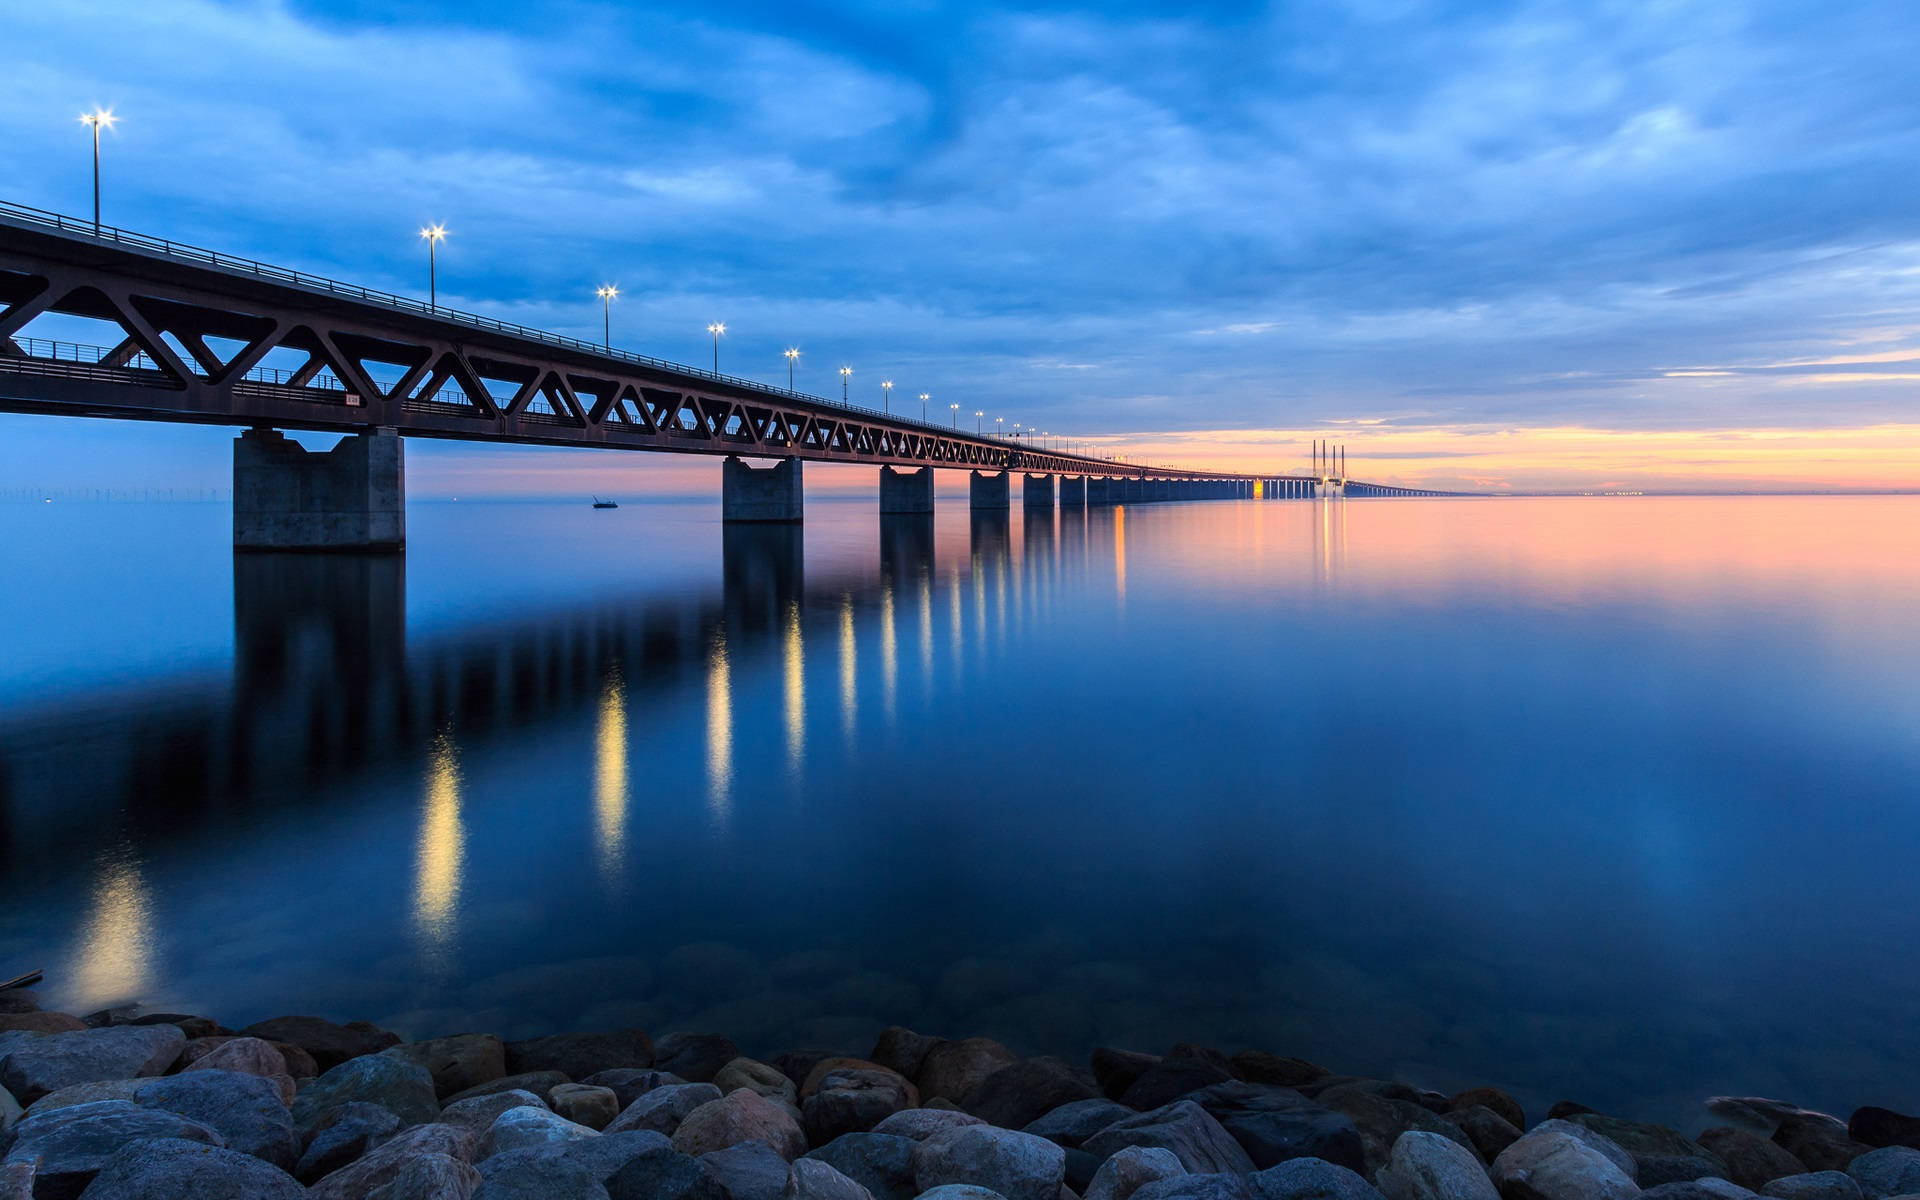 Sweden Oresund Bridge